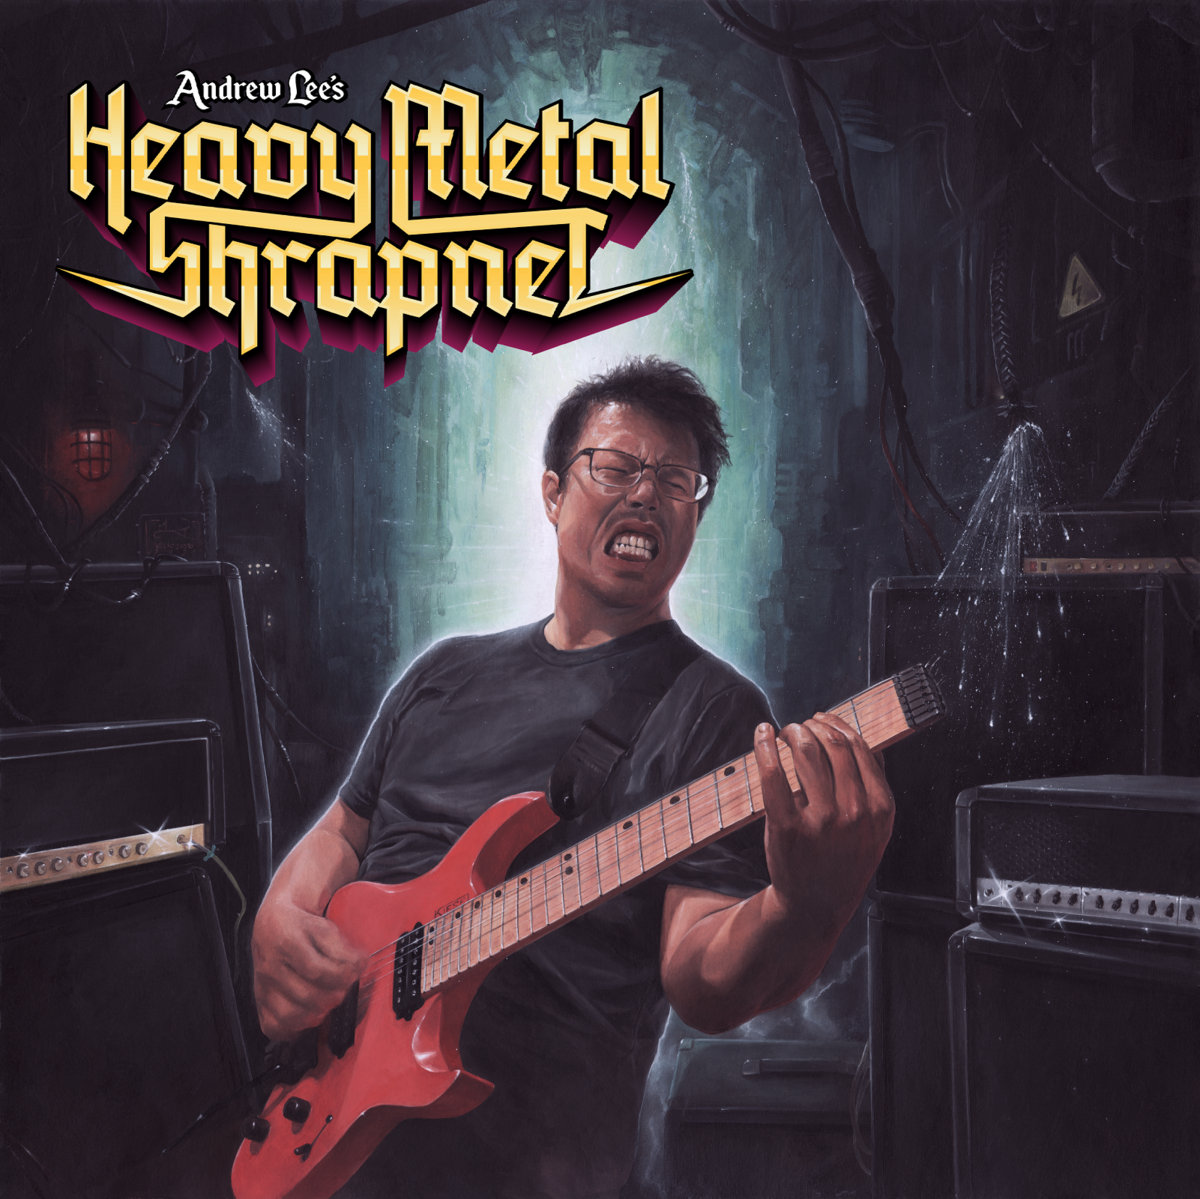 ANDREW LEE'S HEAVY METAL SHRAPNEL / Andrew Lee's Heavy Metal Shrapnel